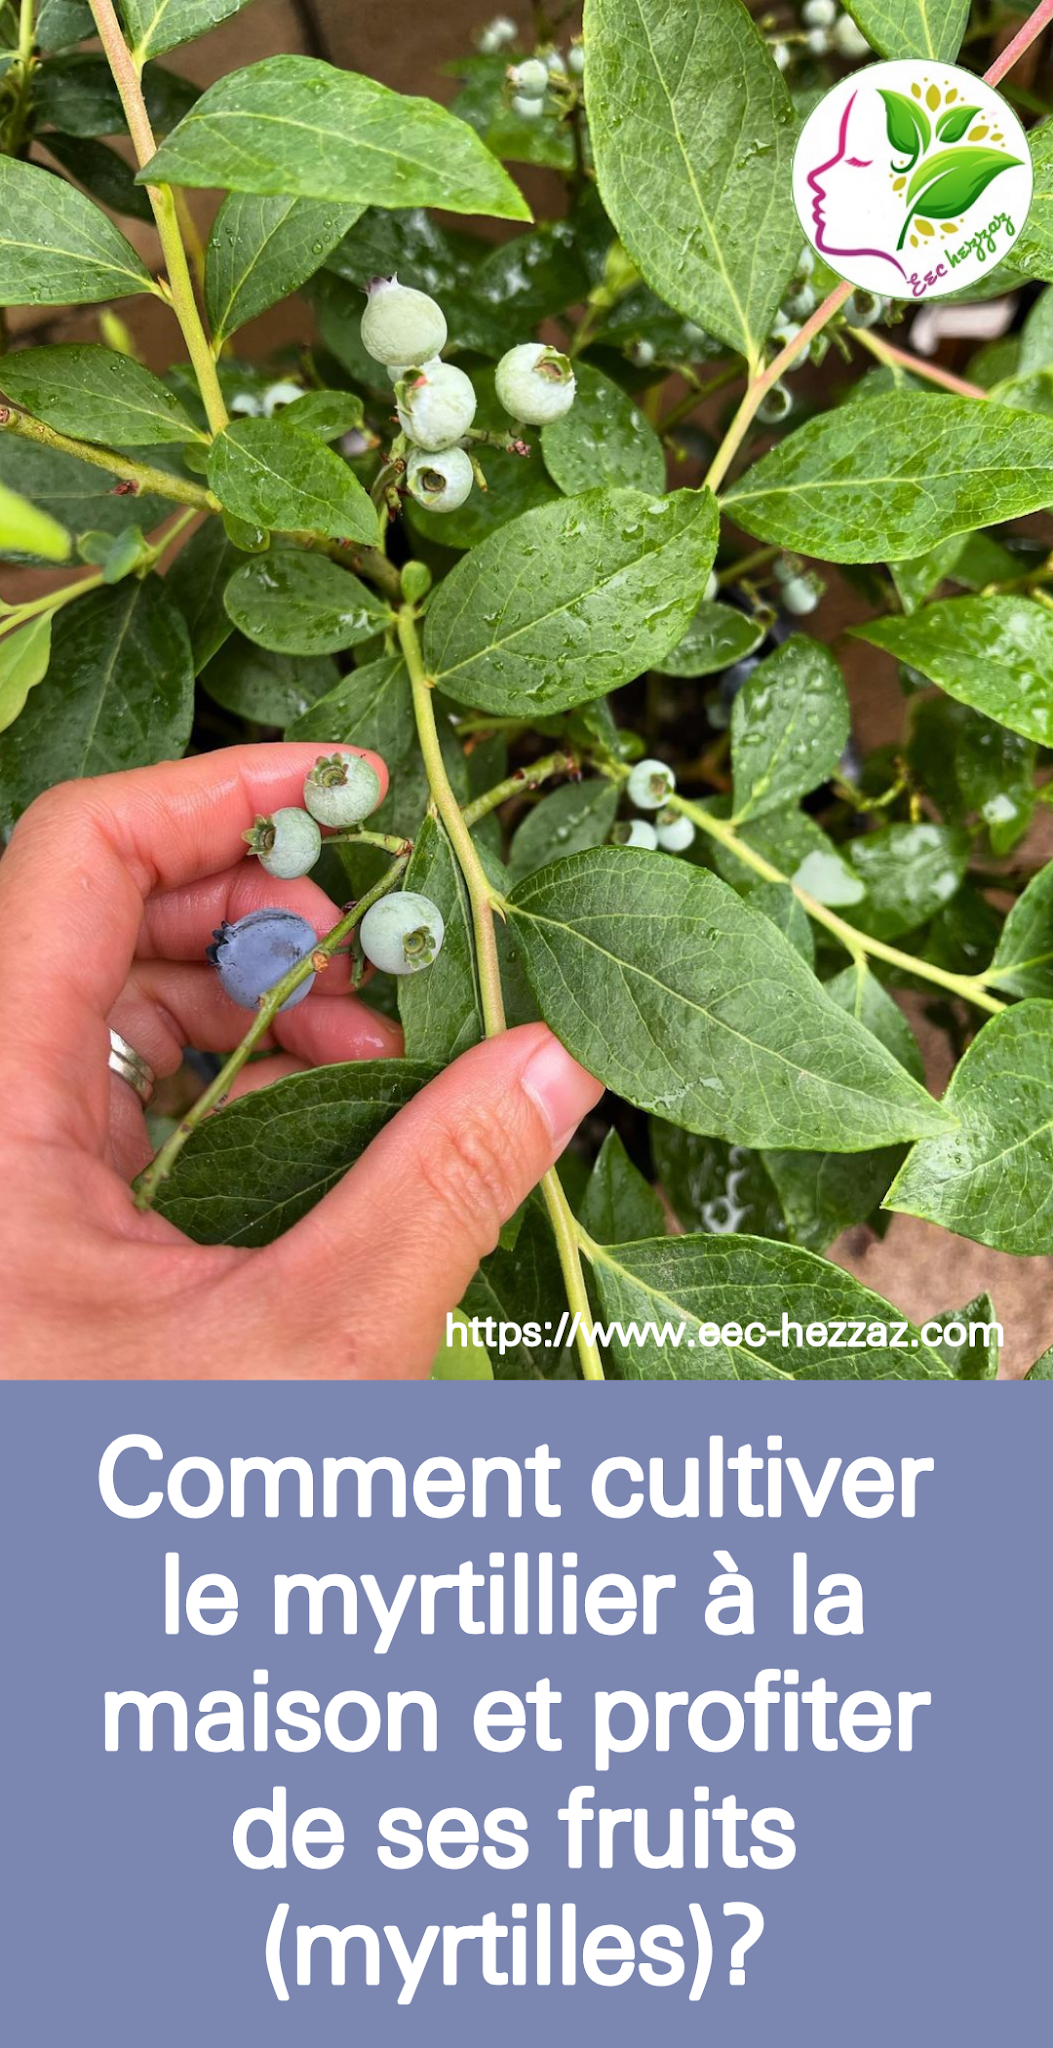 Comment cultiver le myrtillier à la maison et profiter de ses fruits (myrtilles)?